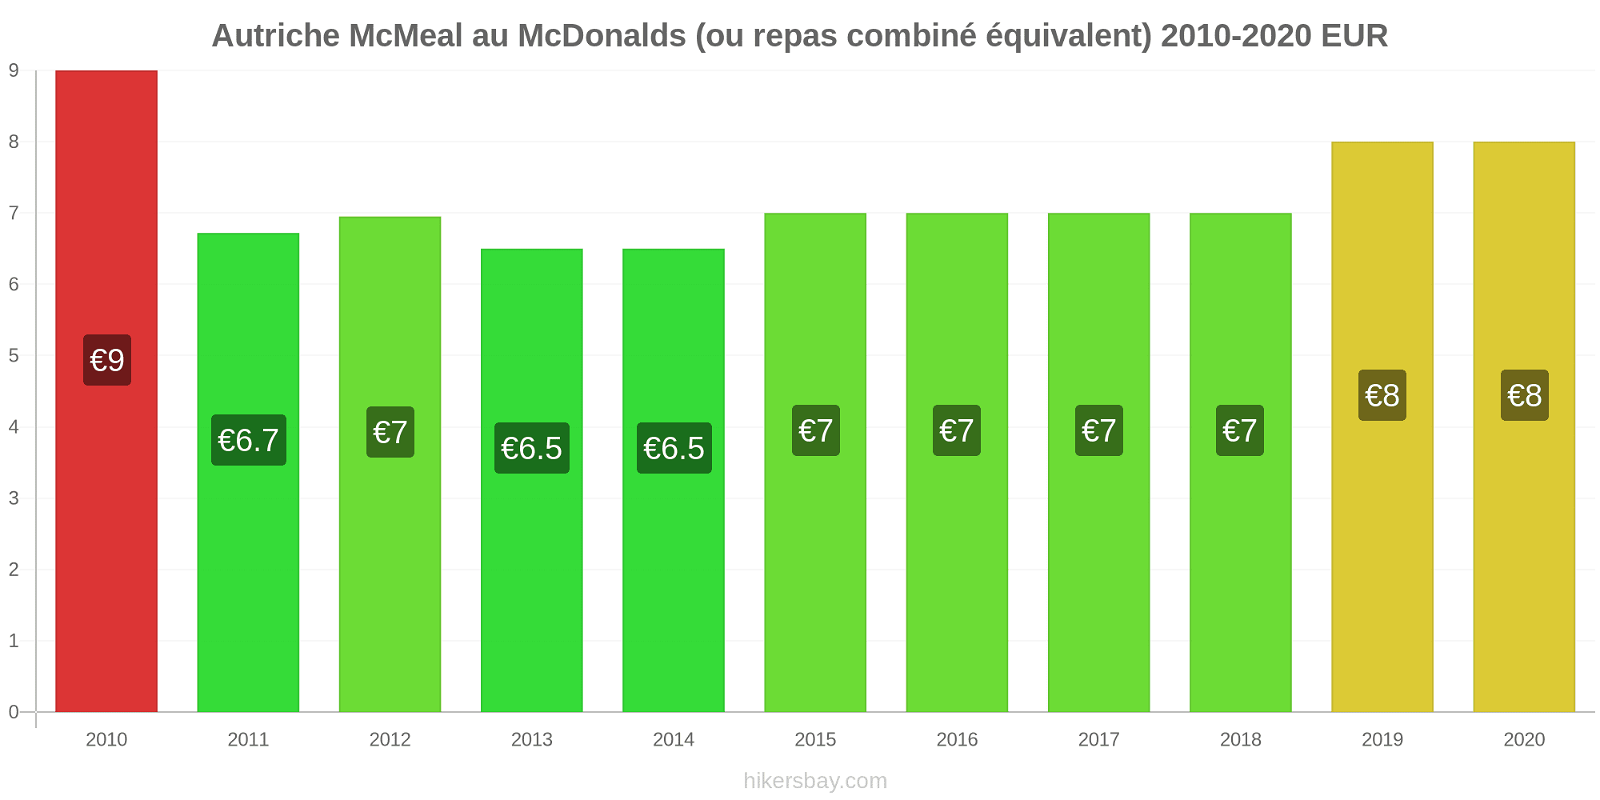 Autriche changements de prix McMeal à McDonald ' s (ou Combo équivalent tourteau) hikersbay.com